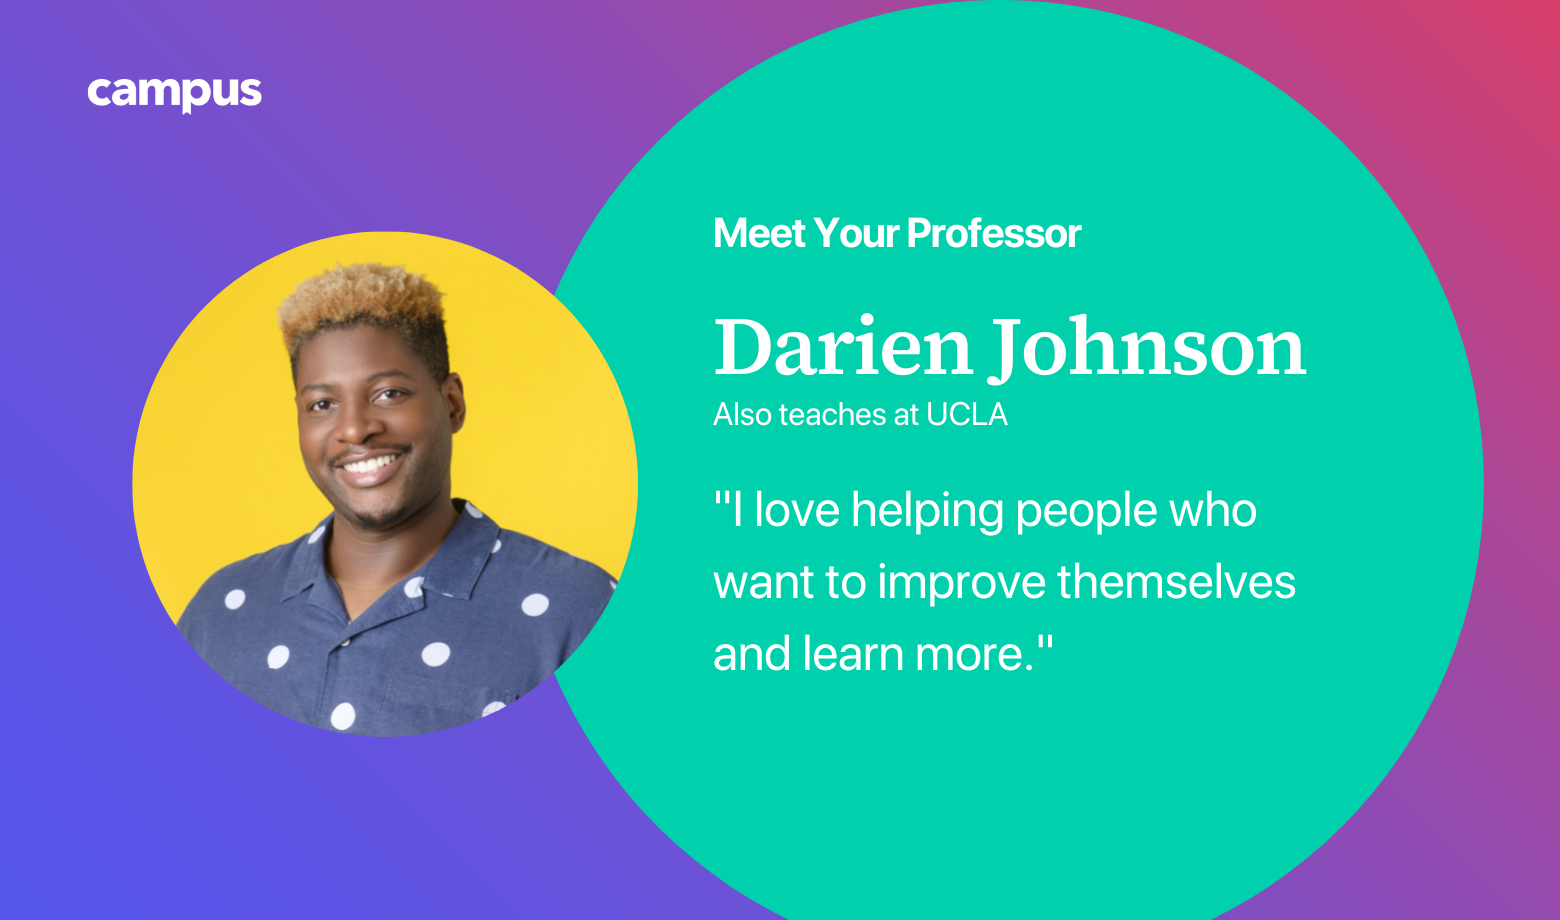 Meet Your Professor: Darien Johnson